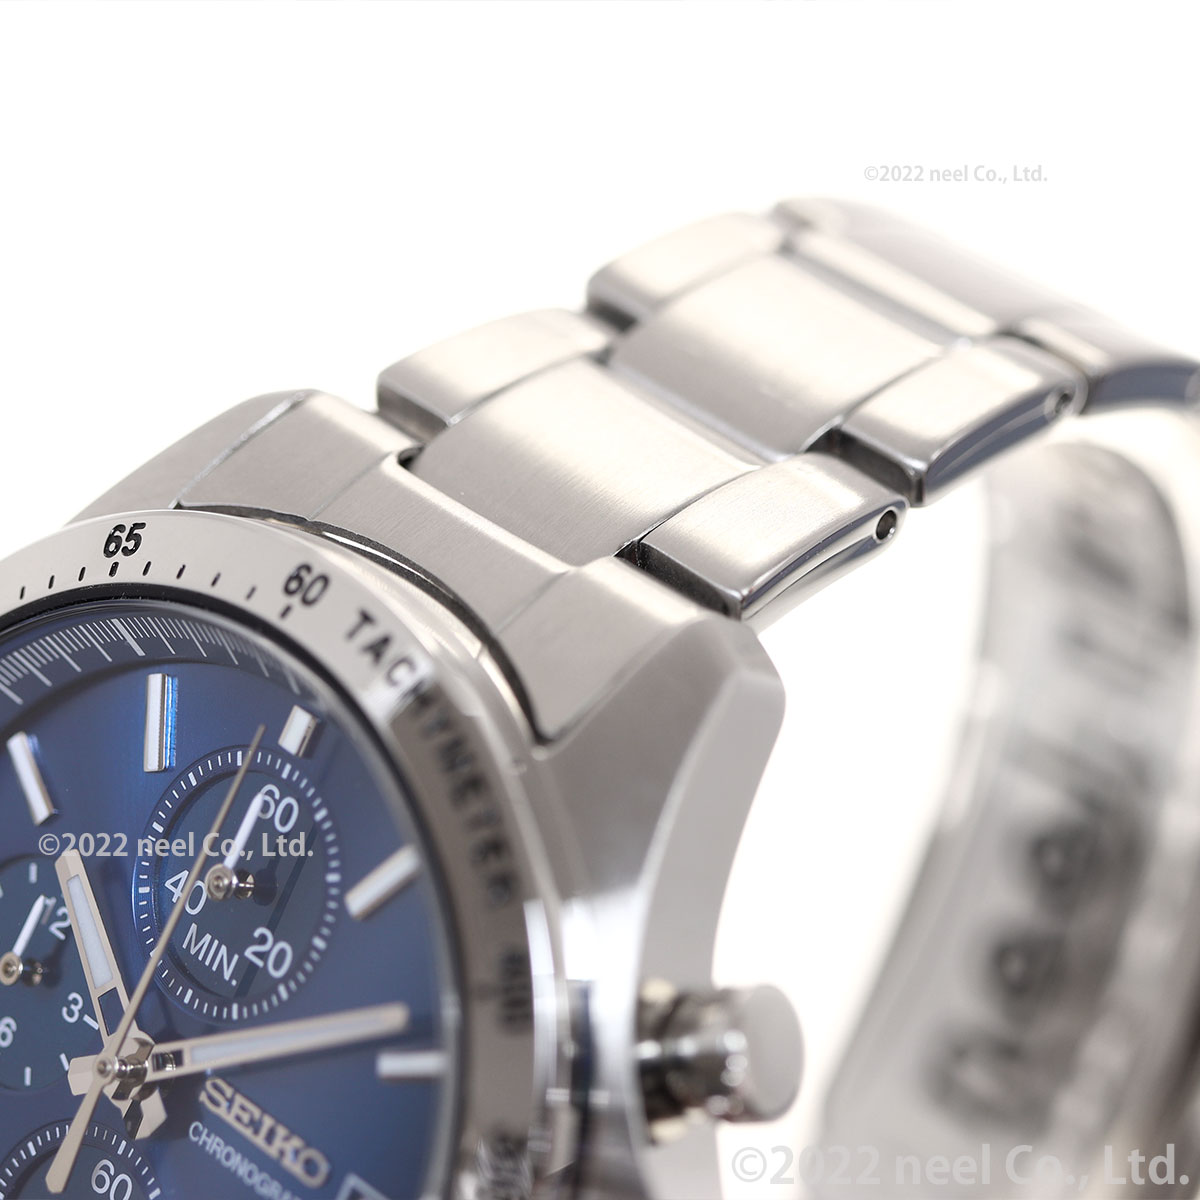 セイコー セレクション メンズ 8Tクロノ SBTR023 腕時計 クロノグラフ 